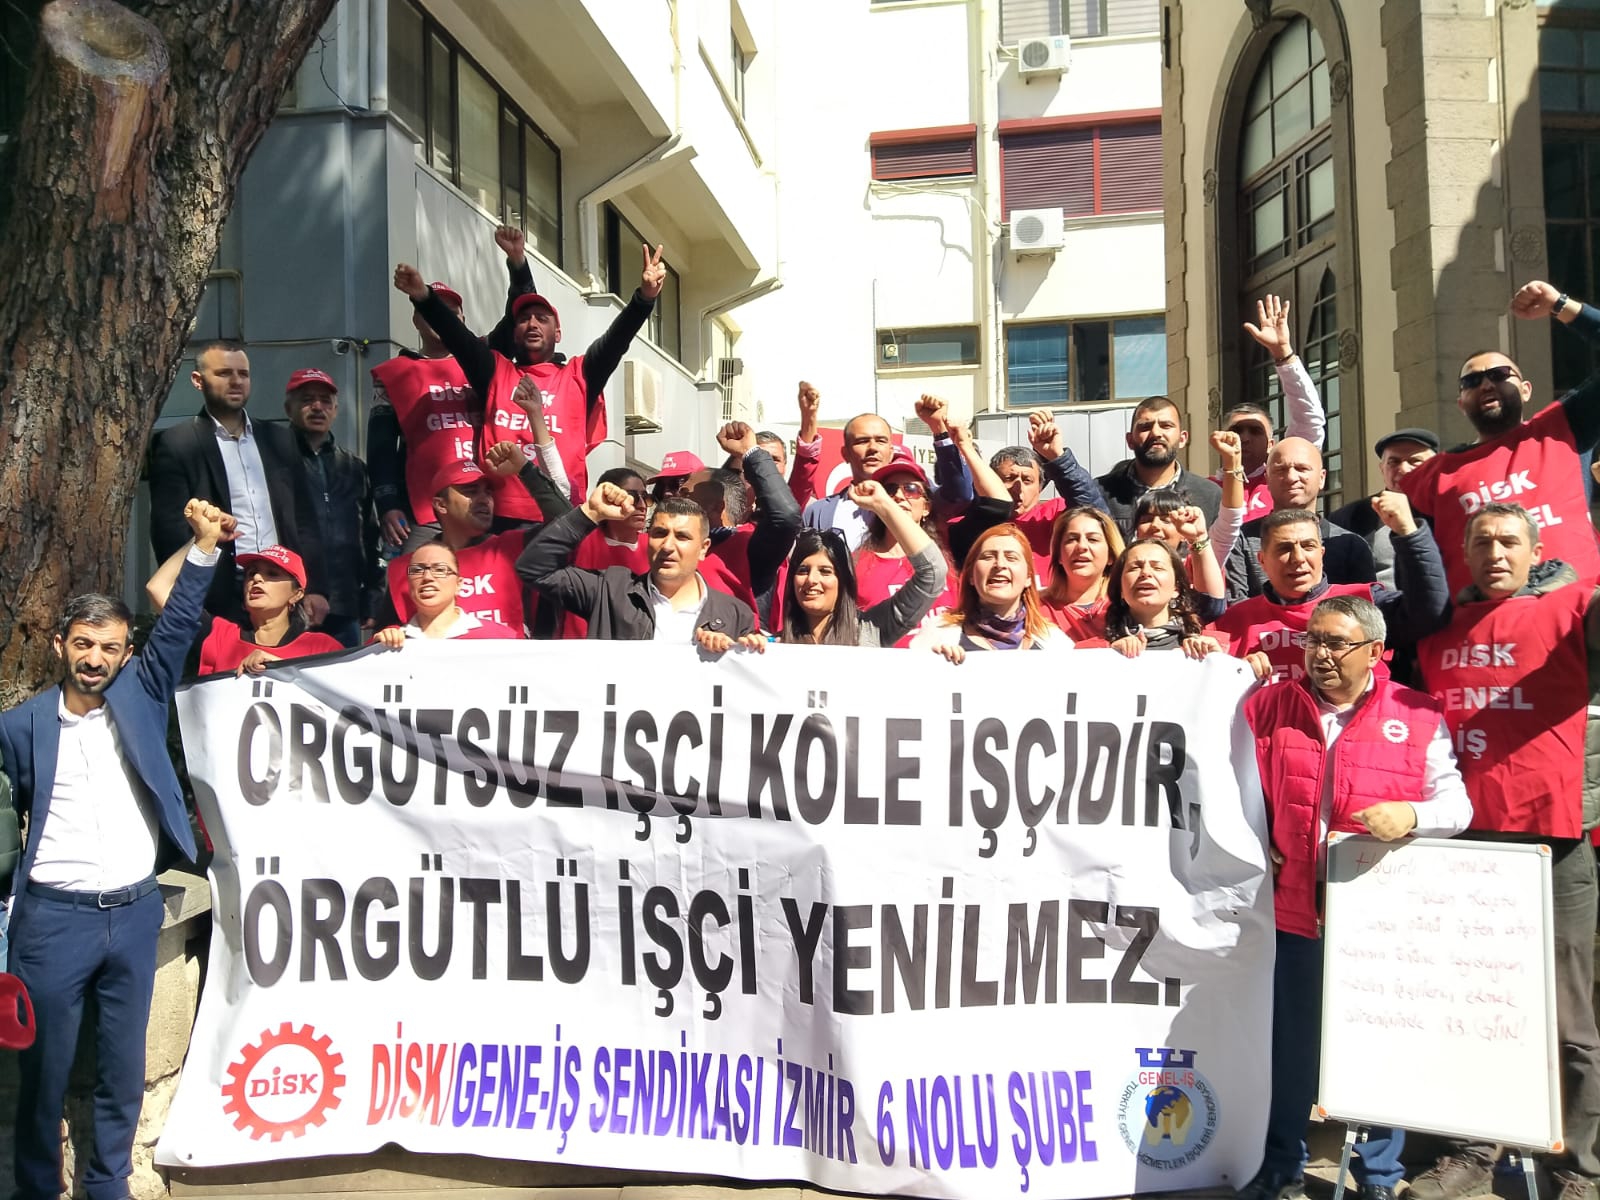 Bergamalı 3 kadın işçi, Türkiye işçi sınıfının korkusuz temsilcisidir